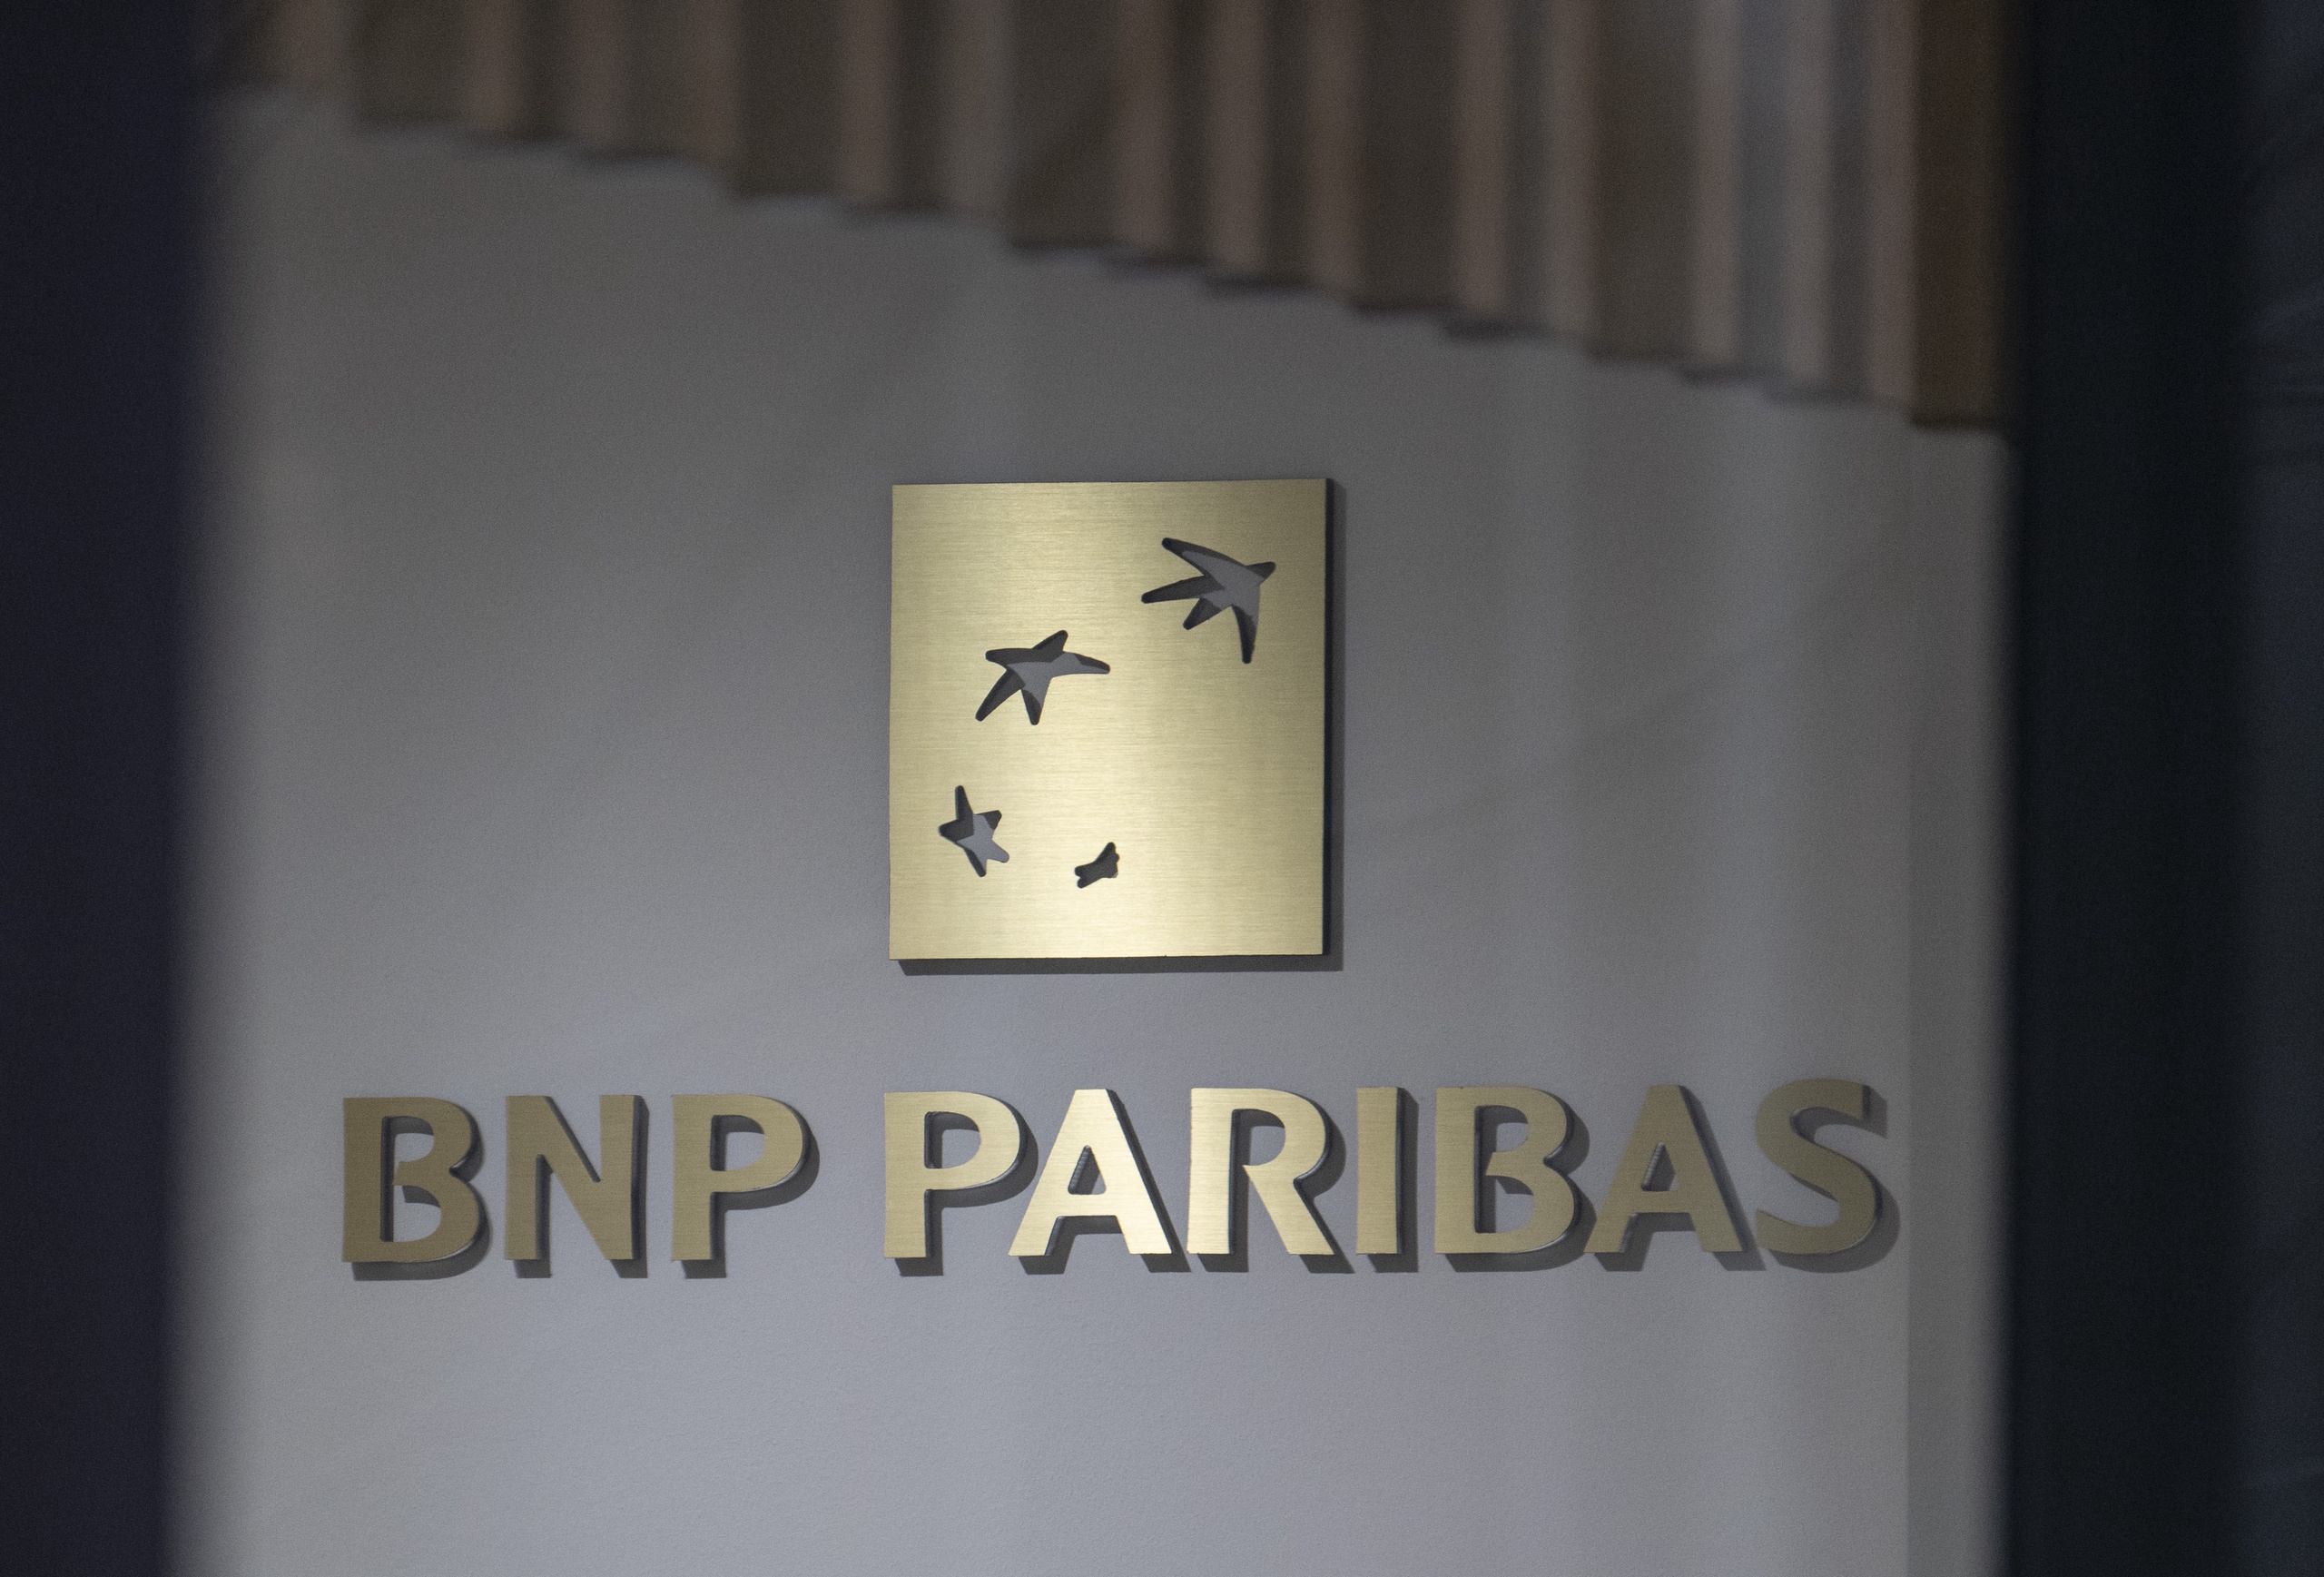 De Duitse justitie heeft vandaag opnieuw een inval gedaan inzake de CumEx-fraudezaak, waarbij tientallen miljarden bij banken via dividendbelasting werden weggesluisd. Dit keer was het de beurt aan de kantoren van BNP Paribas in Frankfurt.